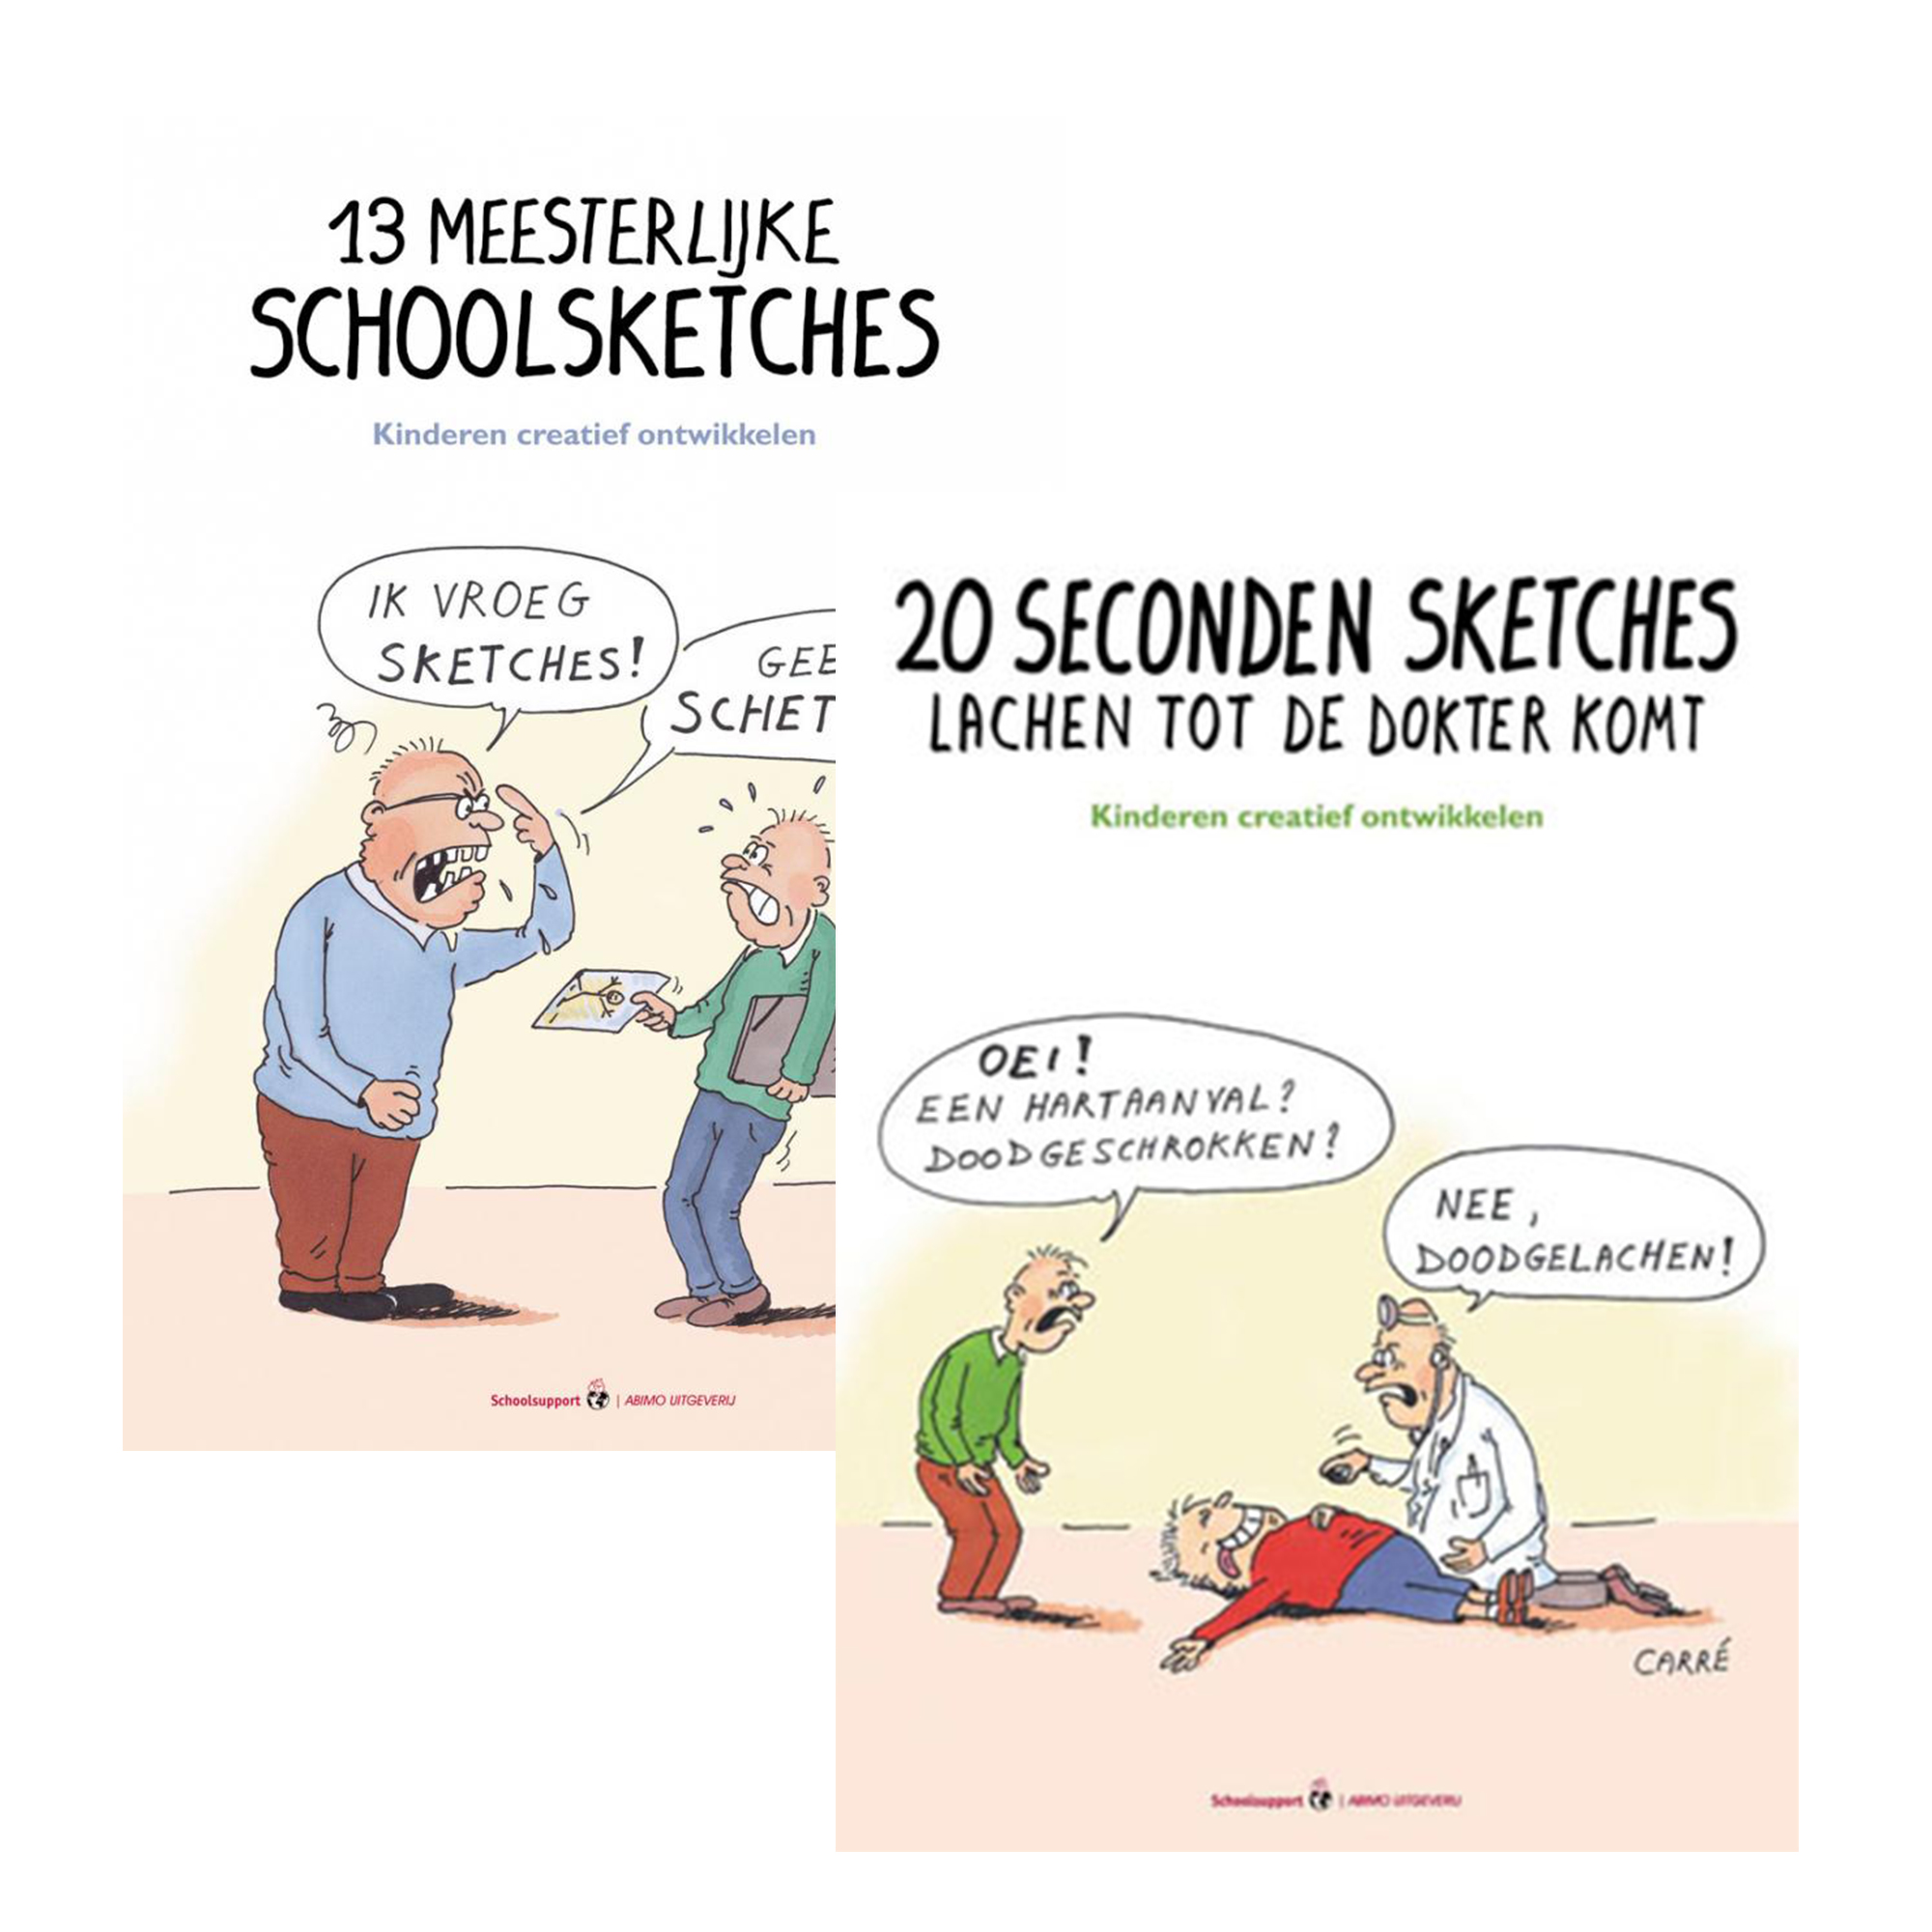 Schoolsketches